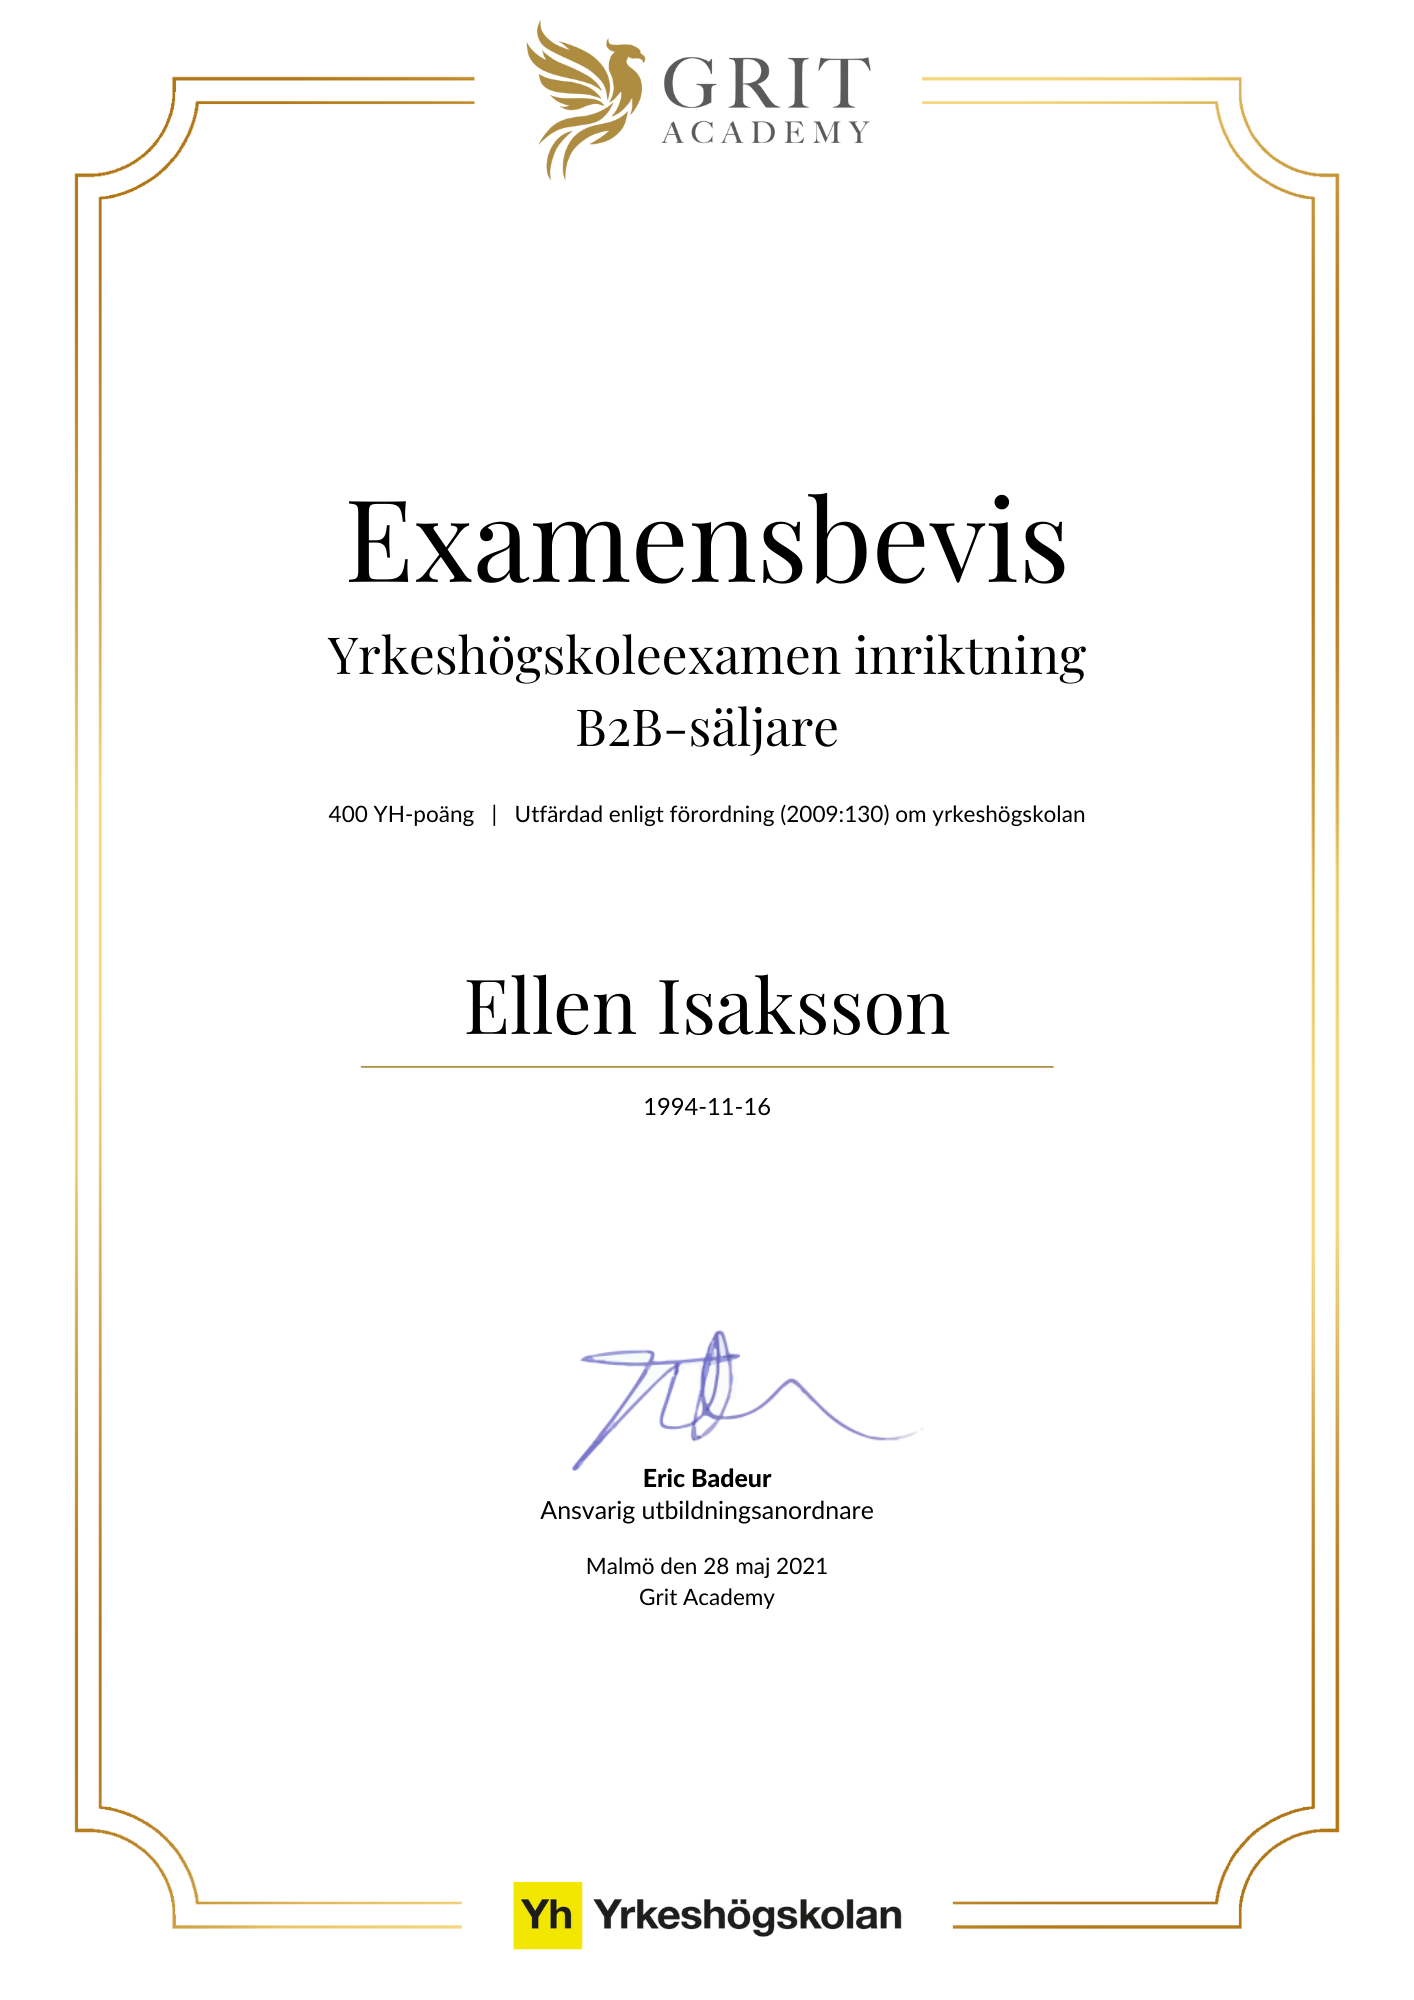 Examensbevis Ellen Isaksson - 1